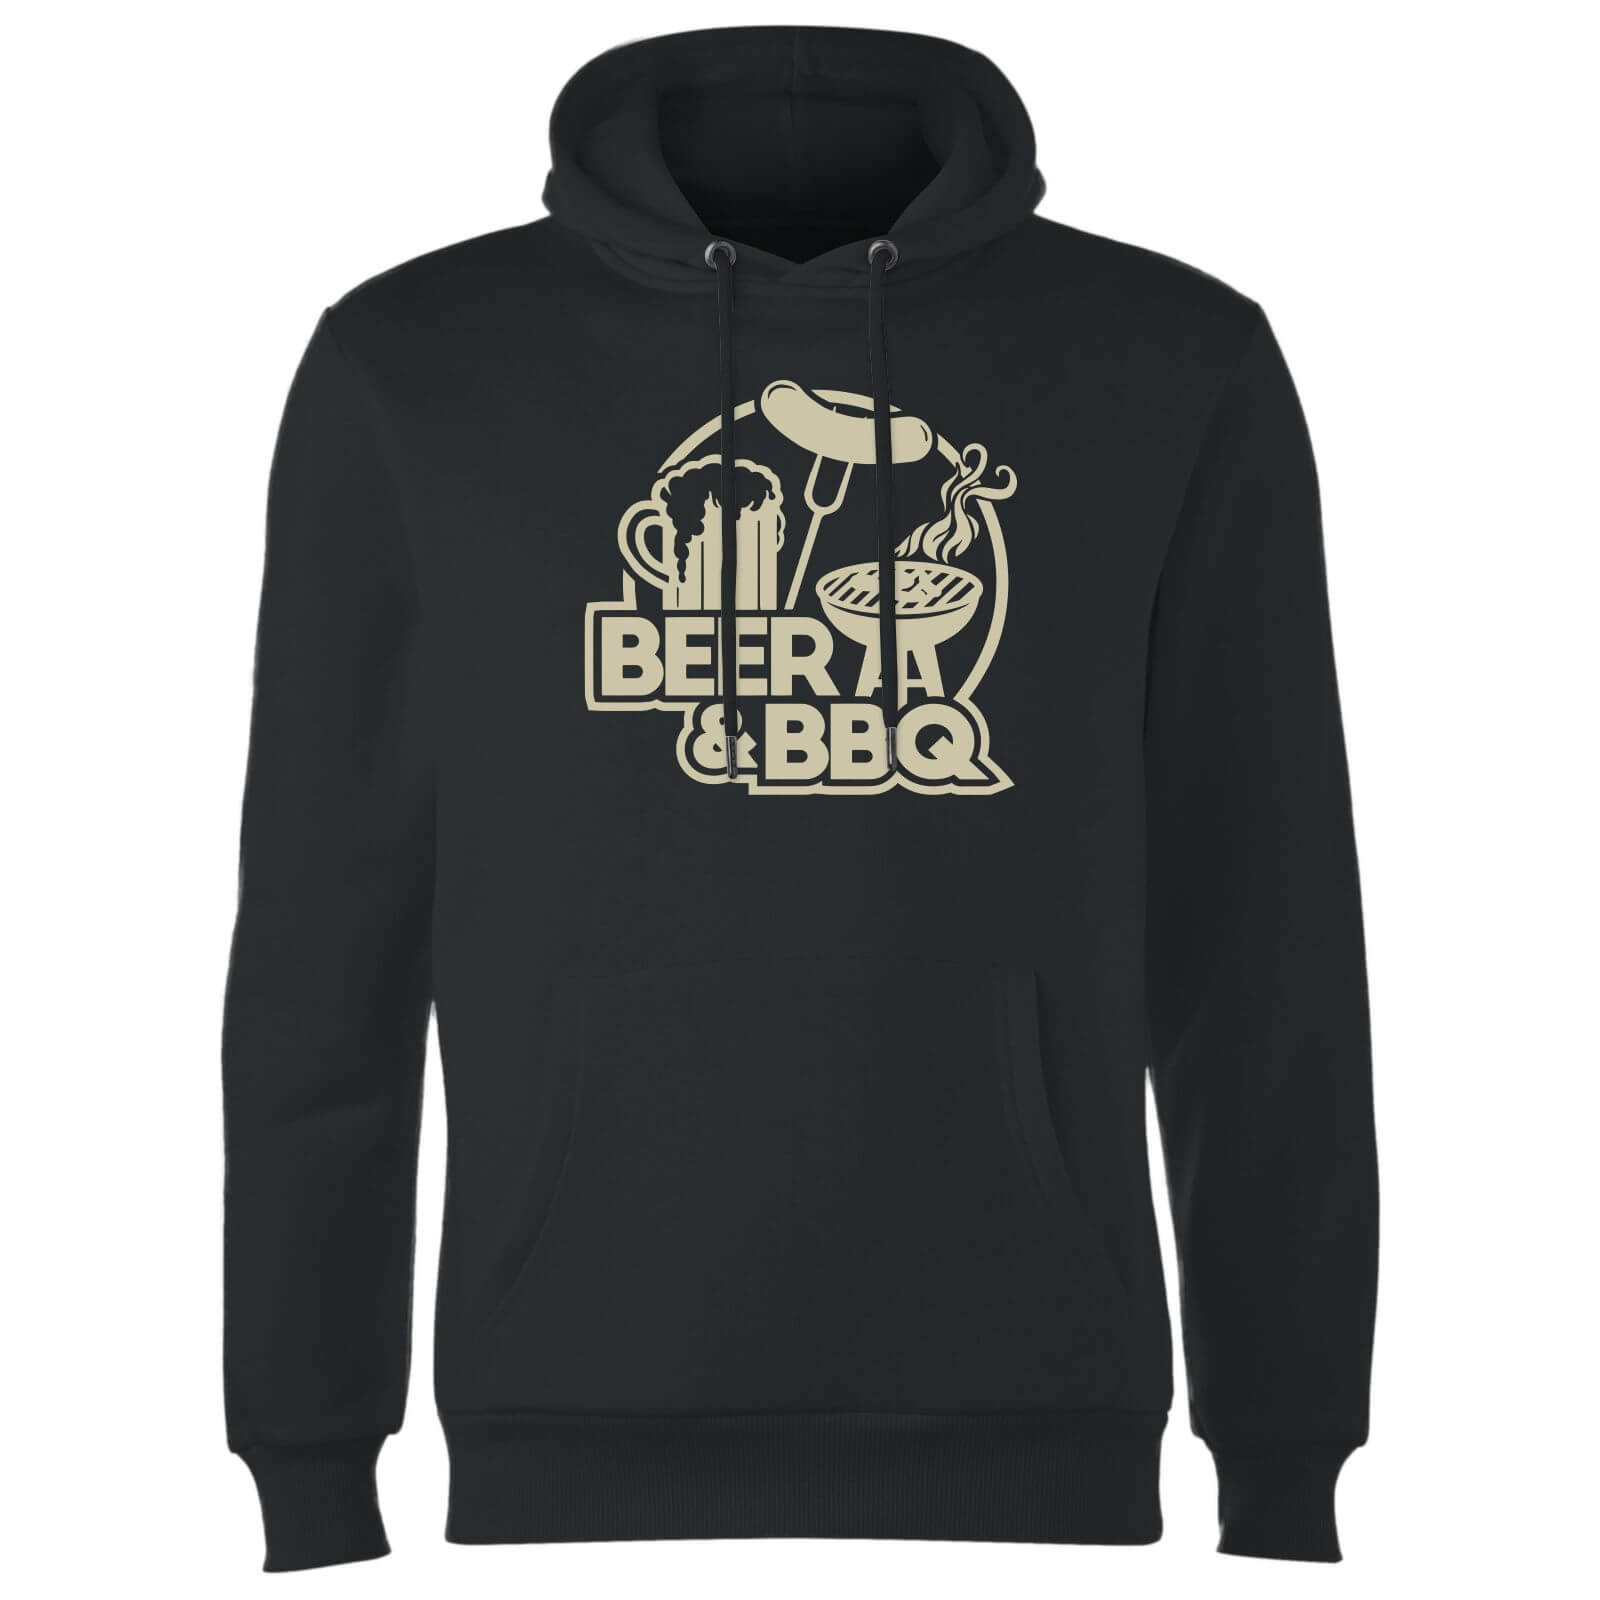 Beer & BBQ Hoodie - Black - L